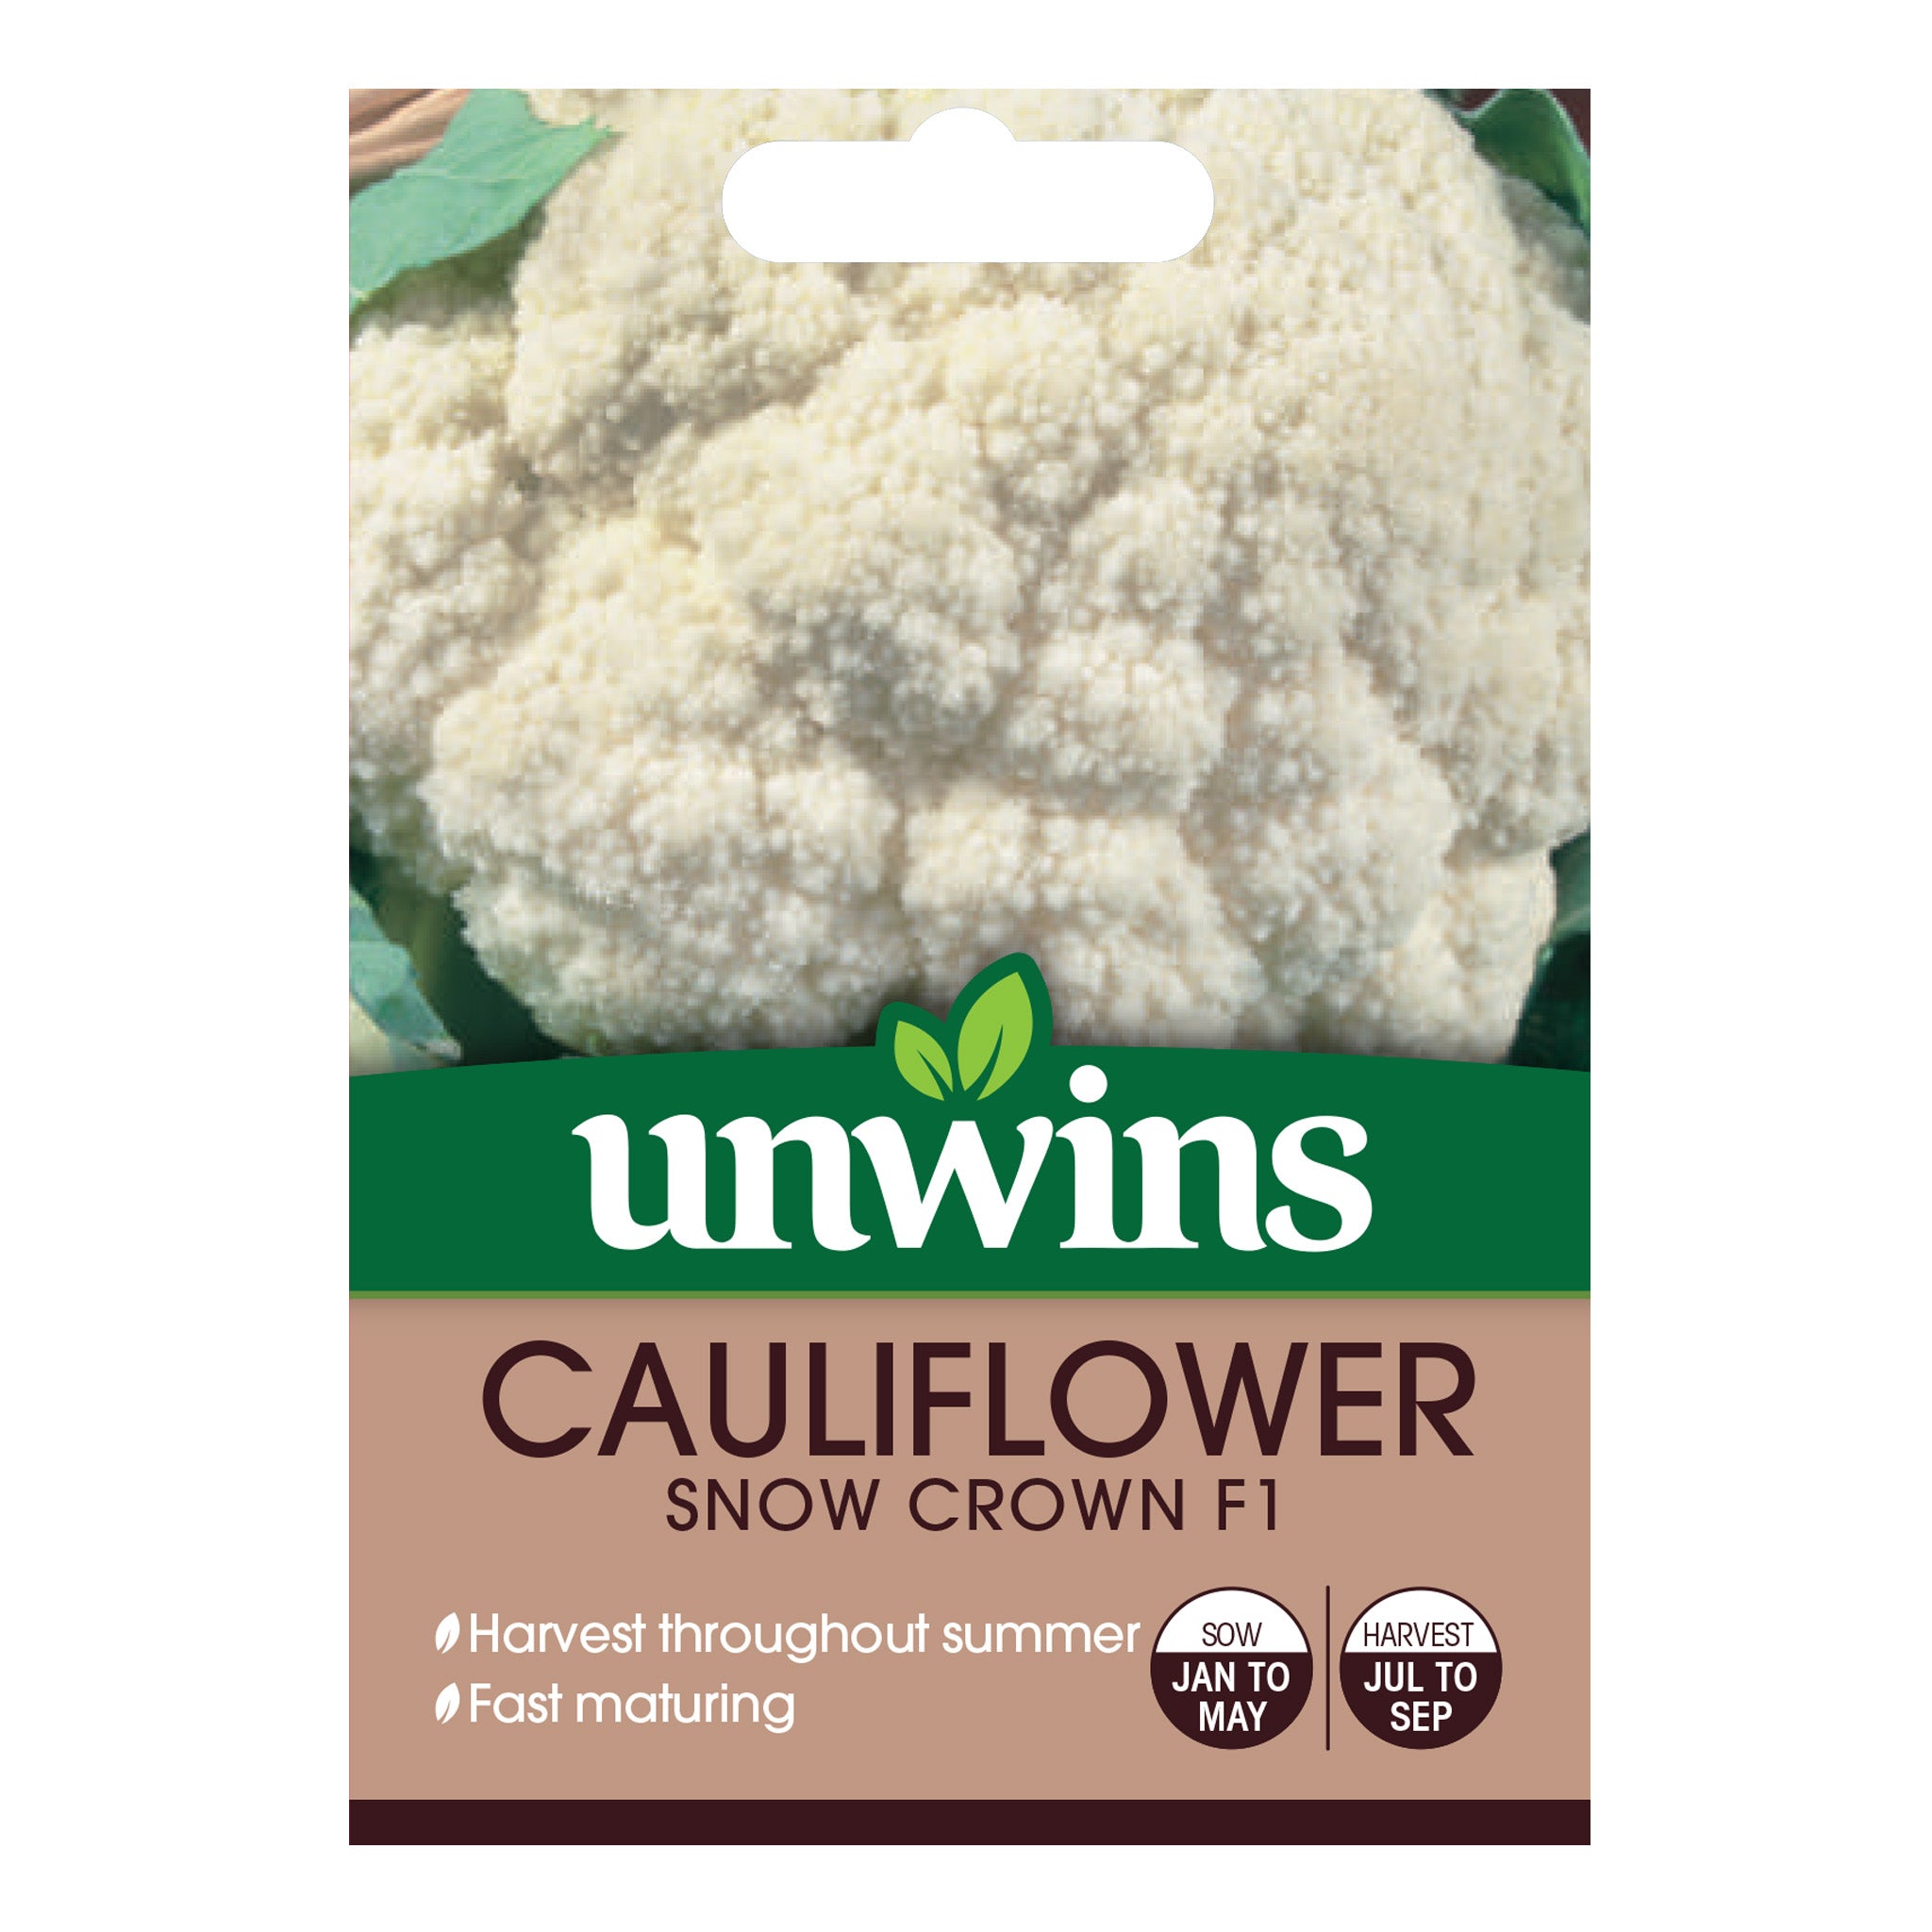 Unwins Cauliflower Snow Crown F1 Seeds